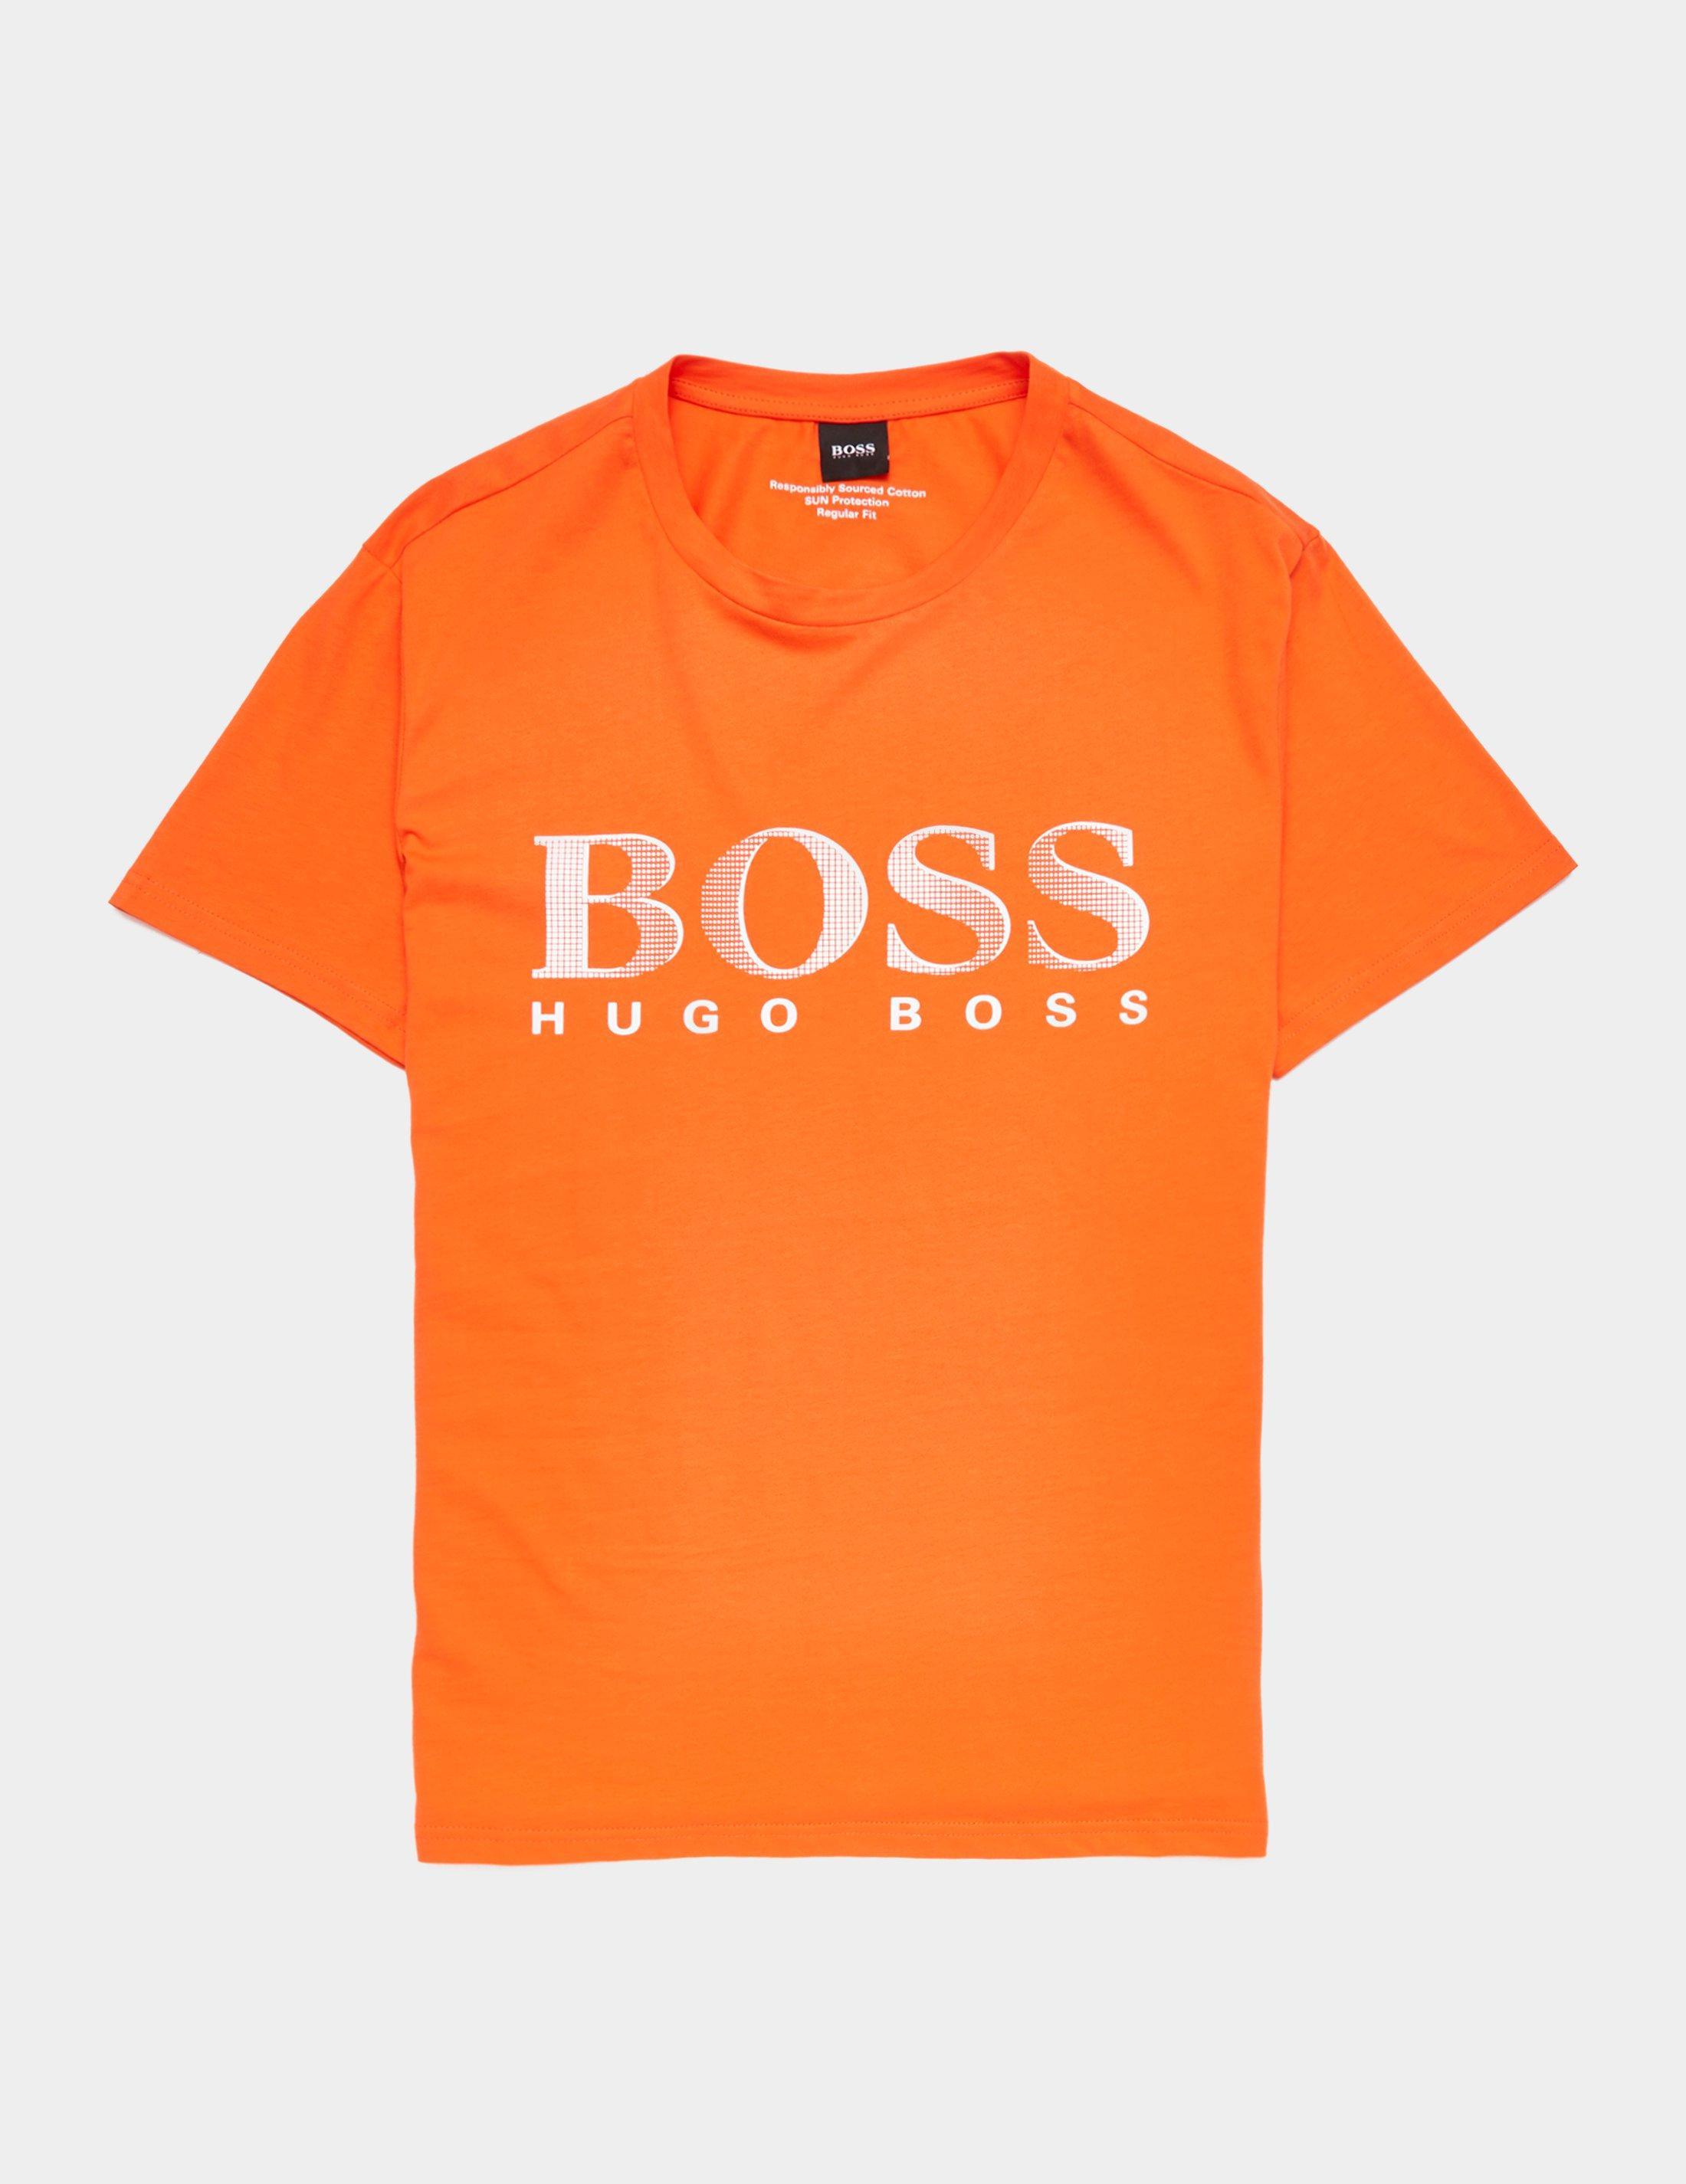 BOSS by HUGO BOSS Swim Short Sleeve T-shirt Orange for Men - Lyst